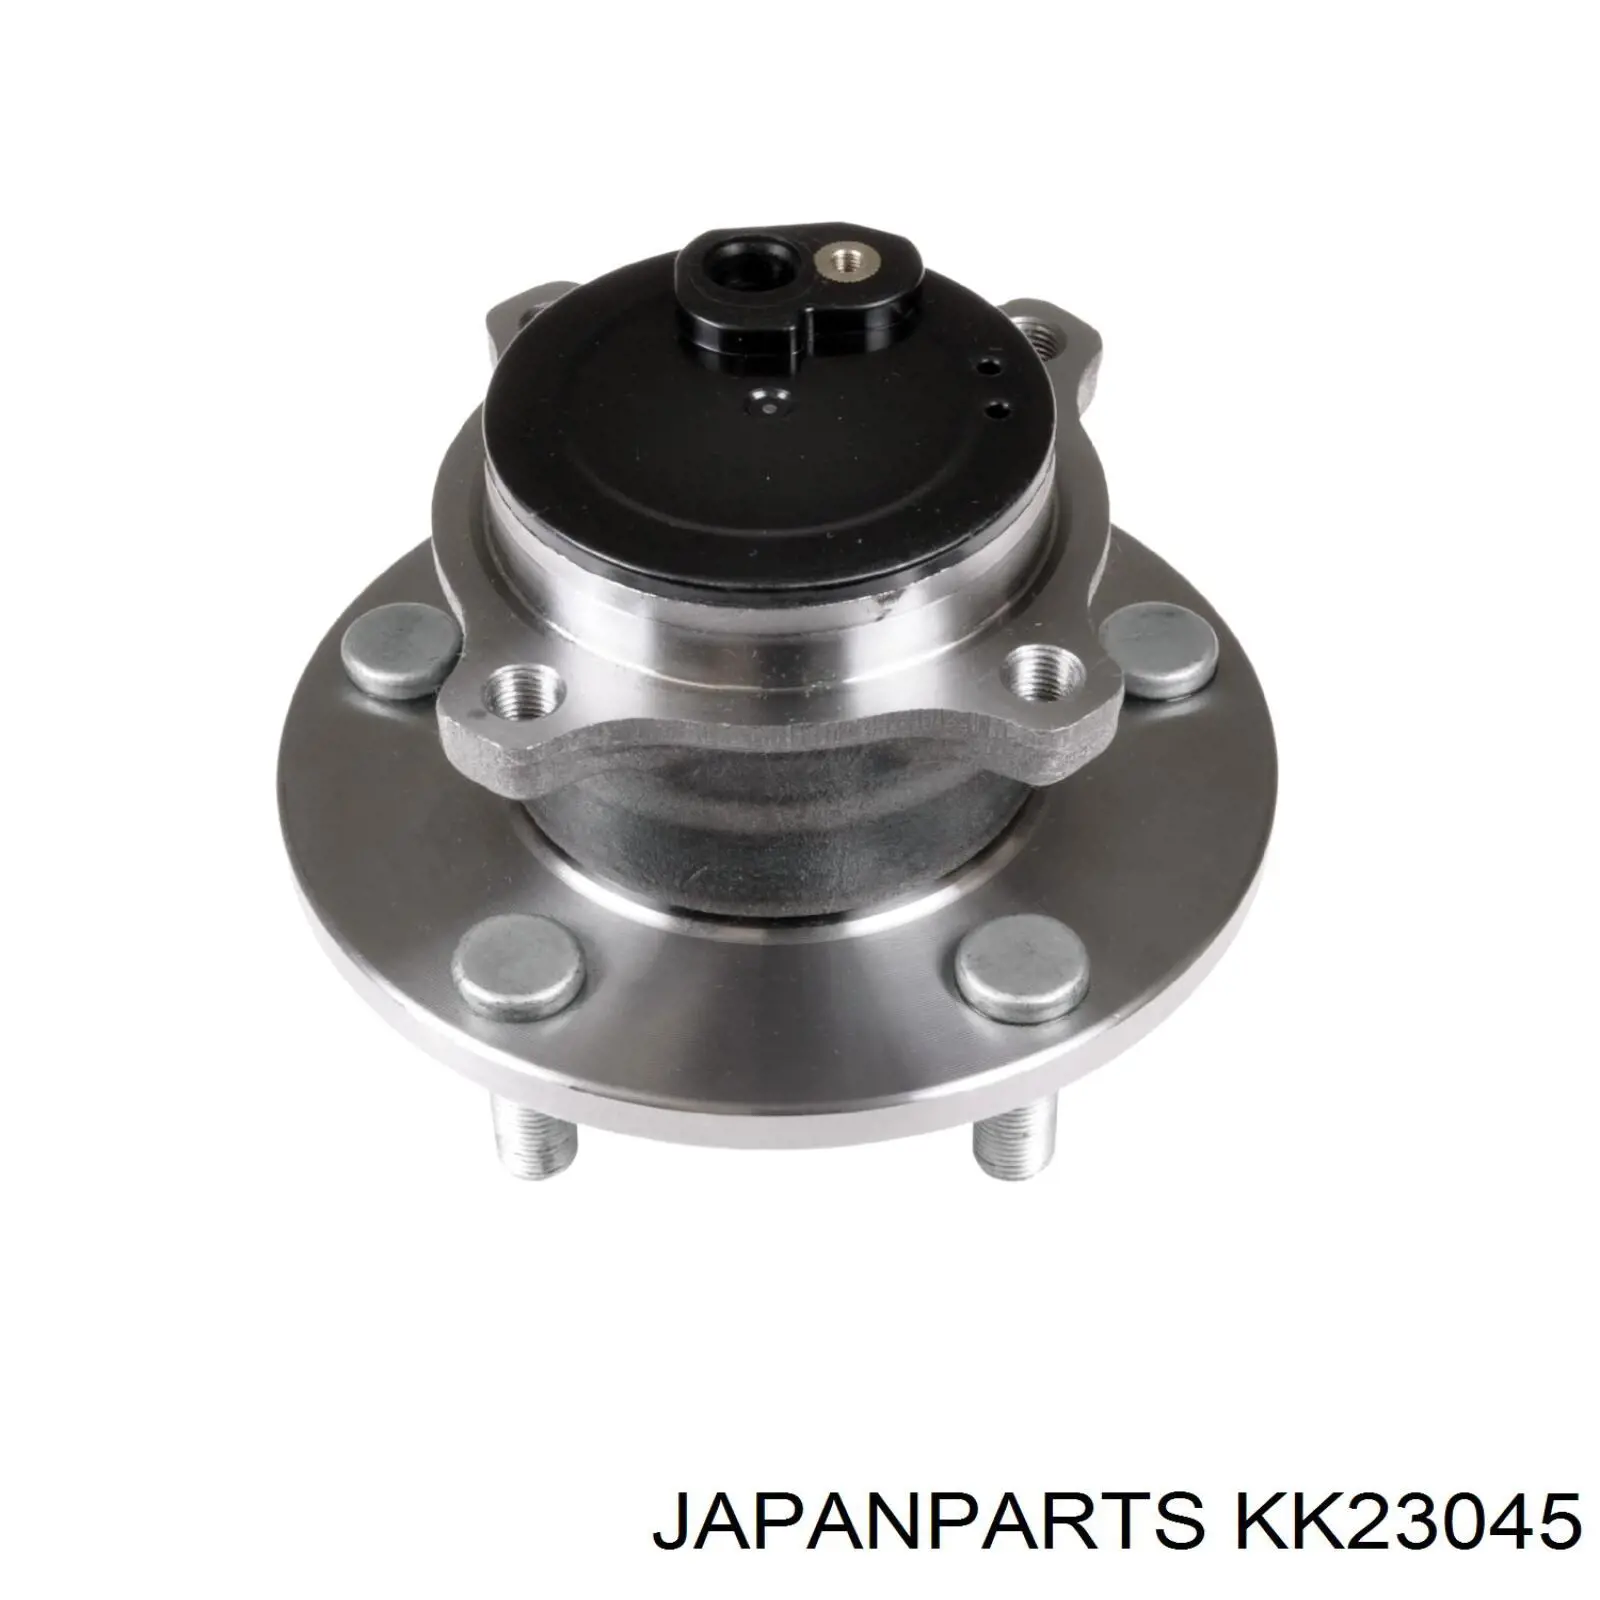 KK-23045 Japan Parts ступица задняя